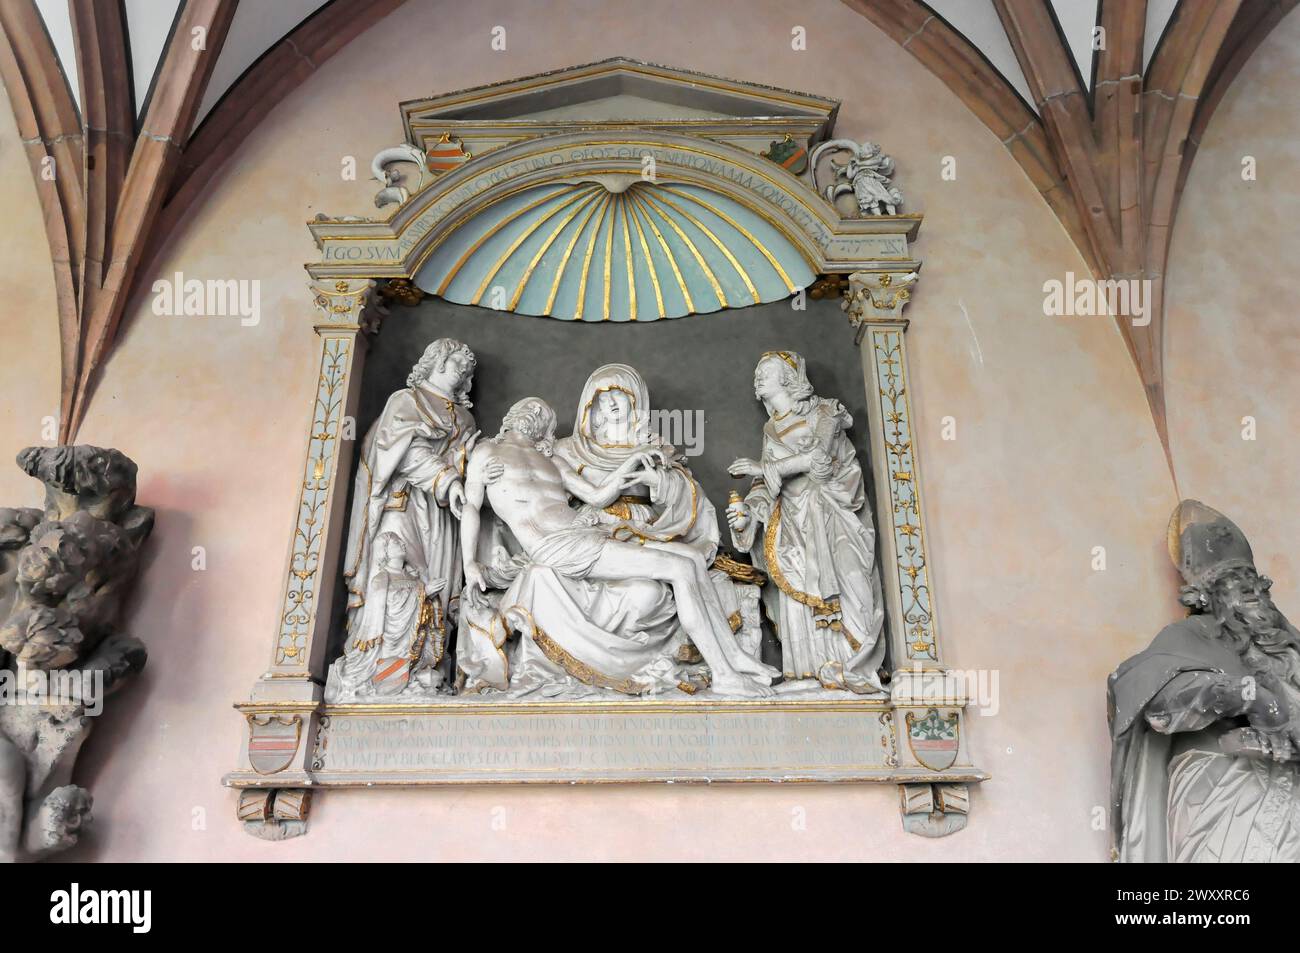 La haute cathédrale de Mayence, Un relief en pierre de la Pieta entouré de sculptures ornées, Mayence, Rhénanie-Palatinat, Allemagne Banque D'Images